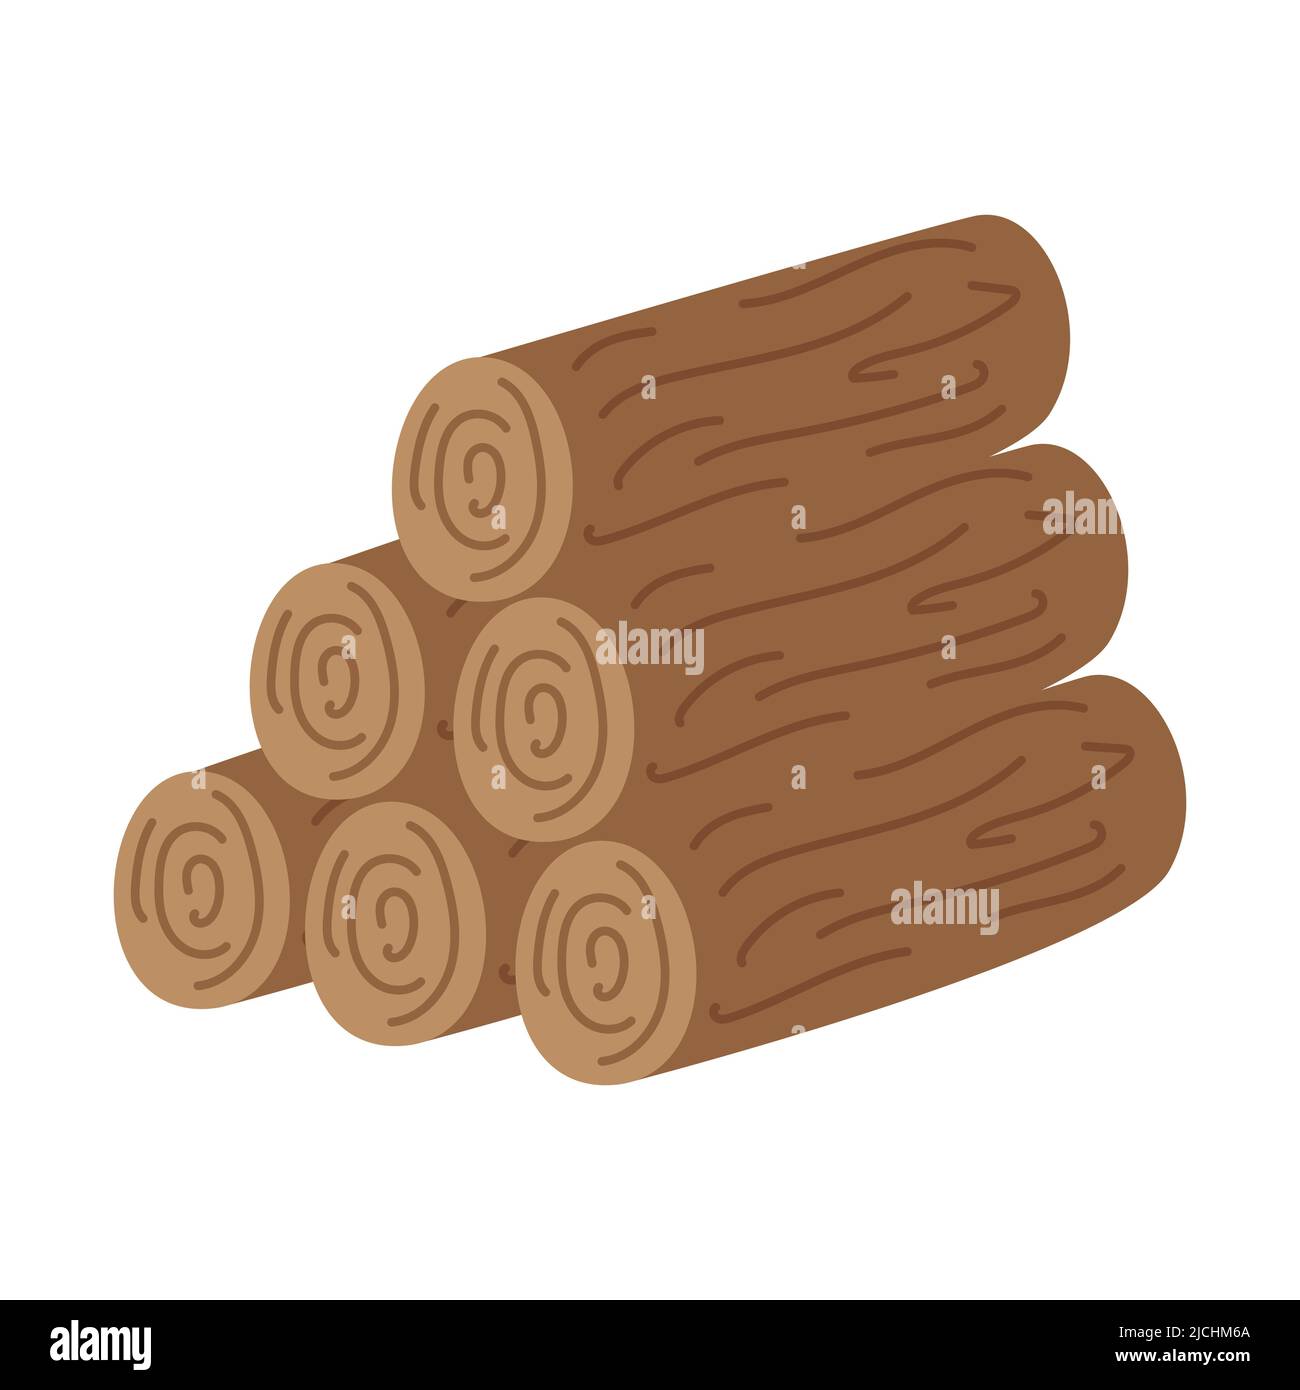 Ein Stapel Brennholz, ein Holzstapel für die Herstellung eines Feuers auf einer Wanderung, Camping, Picknick oder Roadtrip. Fällte Baumstämme. Flache Vektordarstellung isoliert auf einem Stock Vektor